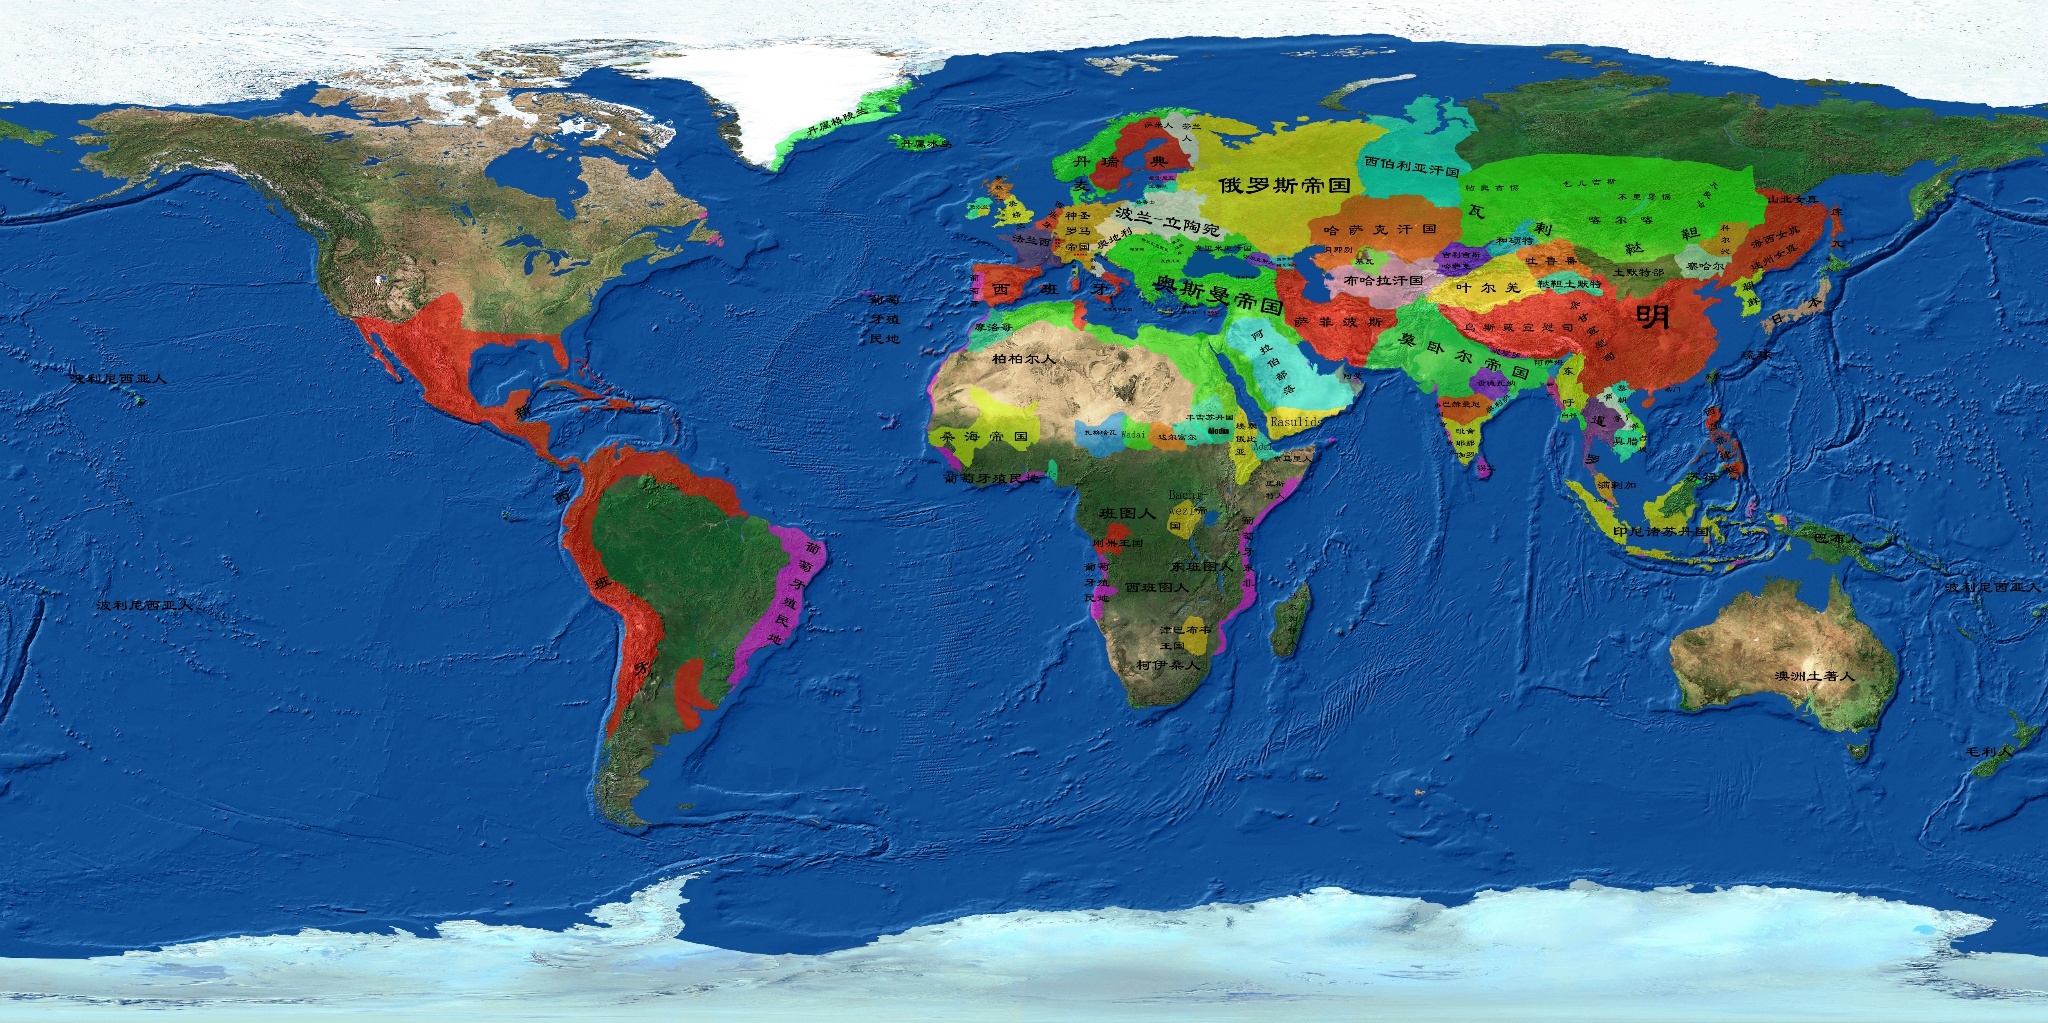 世界地图 世界  (长按地图可以放大,保存,分享) 1410年 1644年: 1700图片